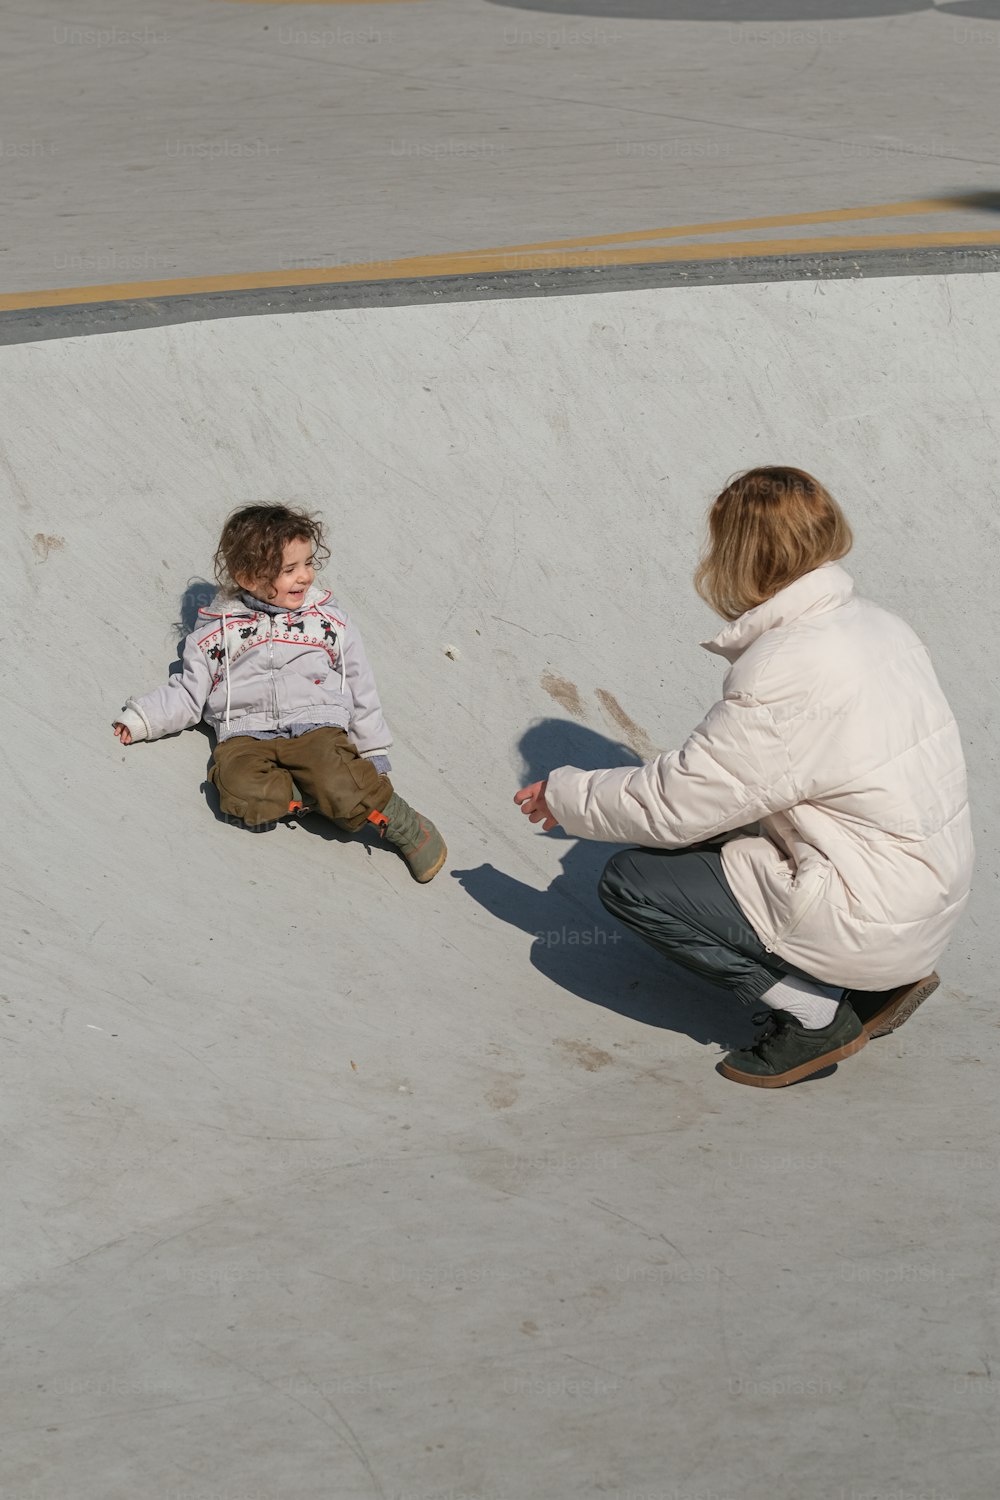 Eine Frau, die neben einem Kind auf einem Skateboard kniet